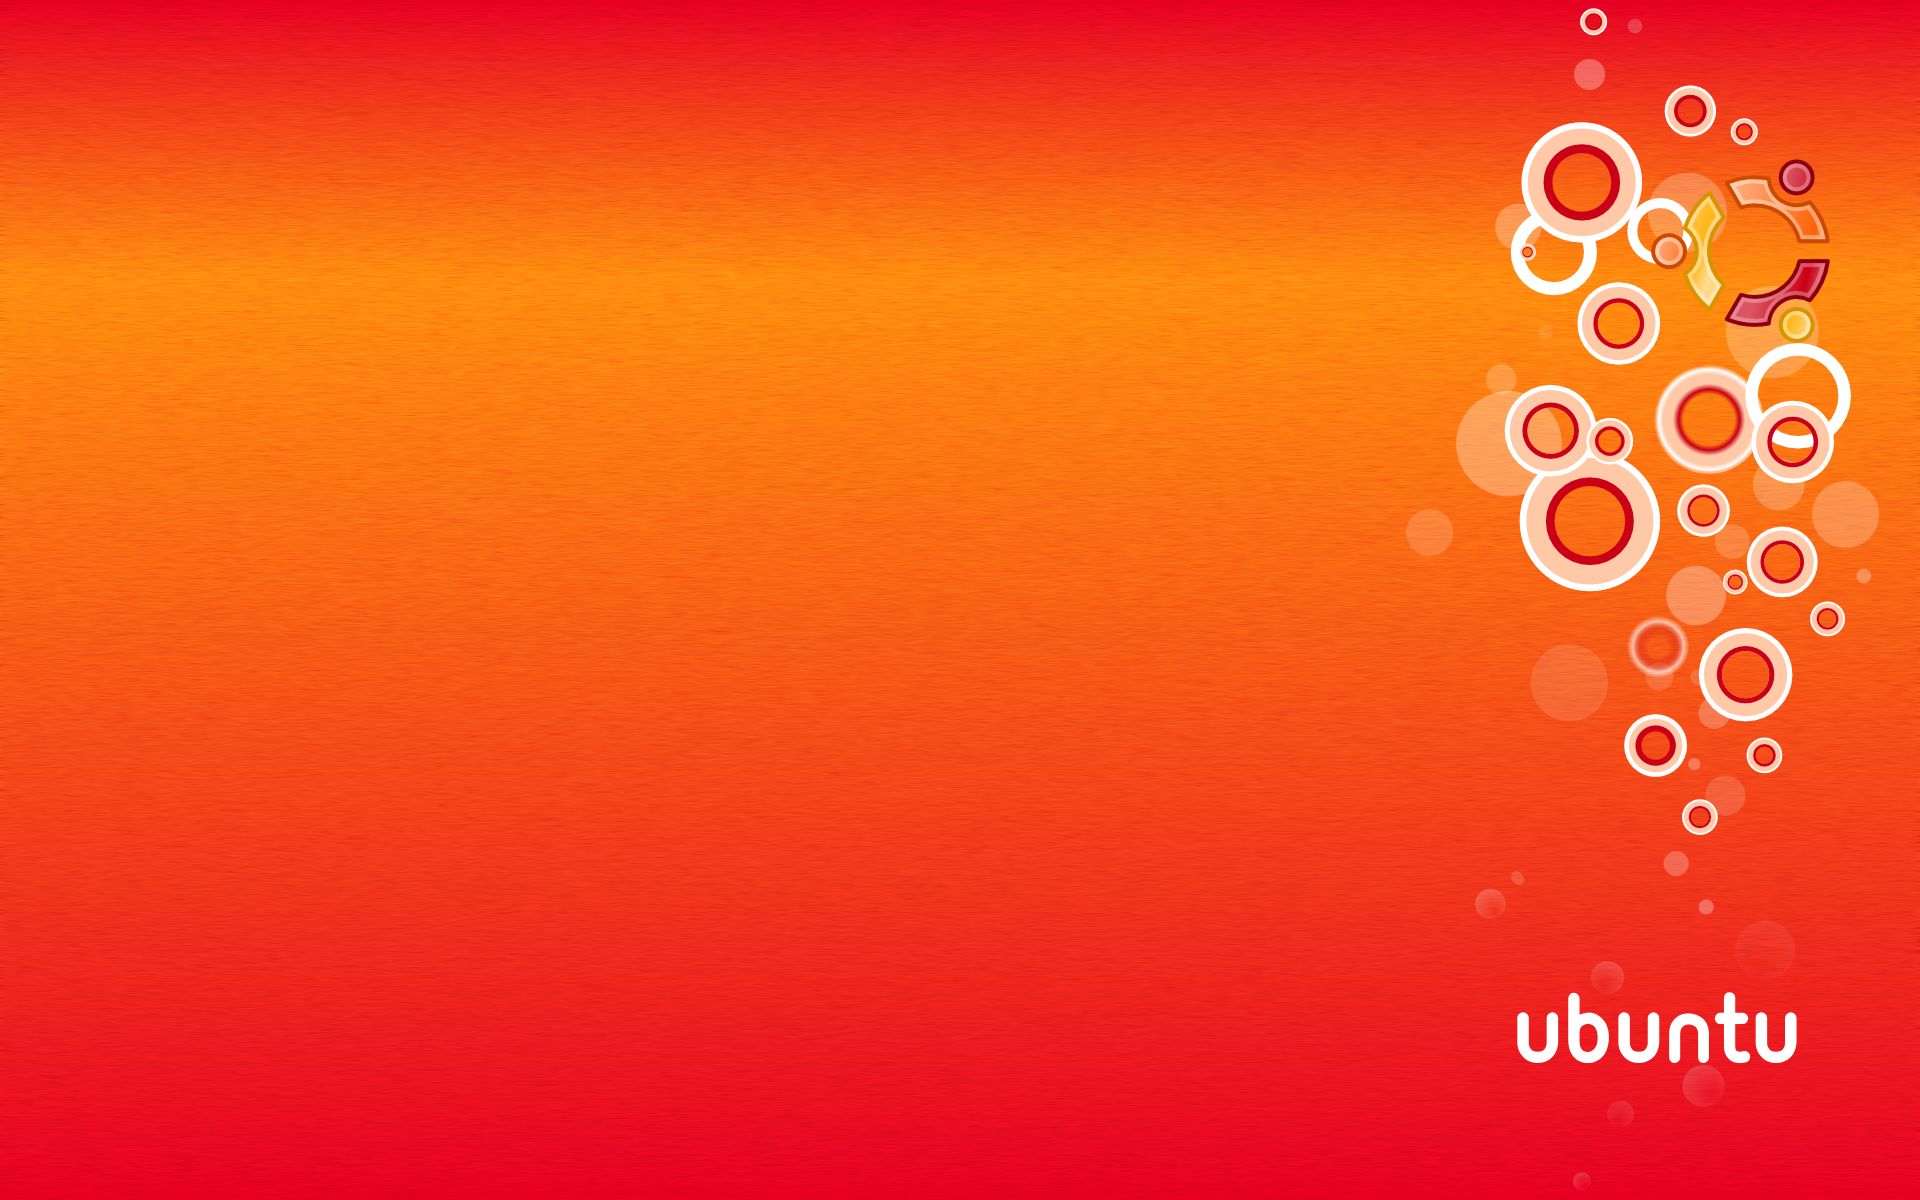 fond d'écran ubuntu,rouge,orange,jaune,ciel,pêche